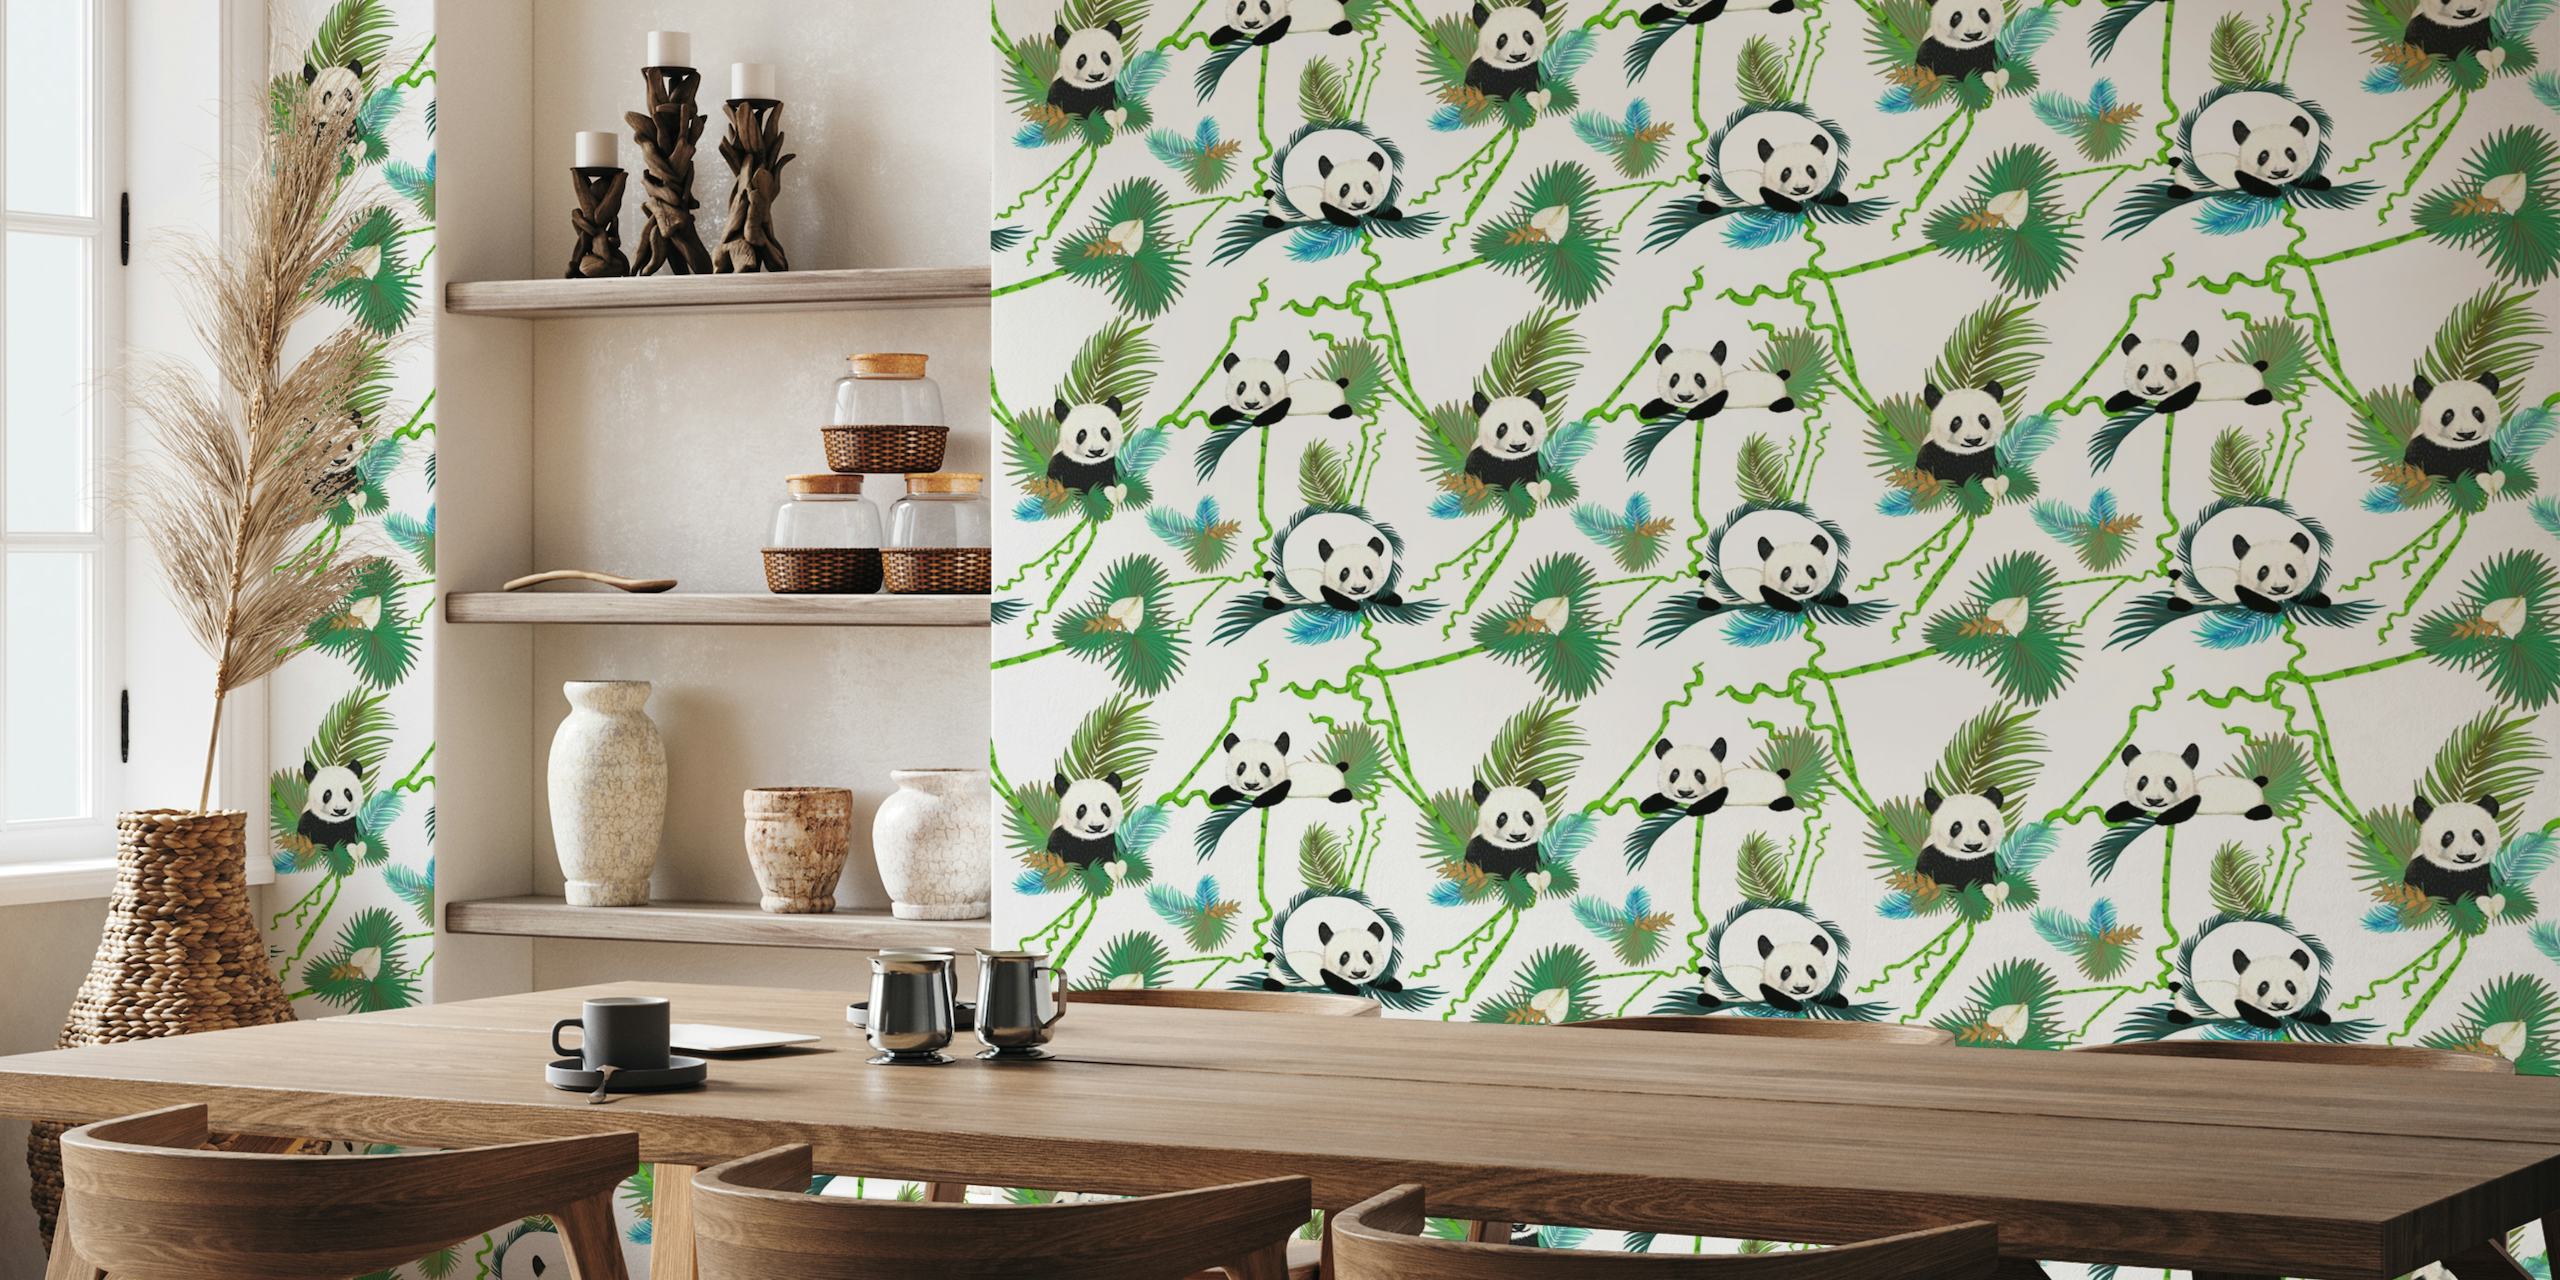 Bamboo and panda behang